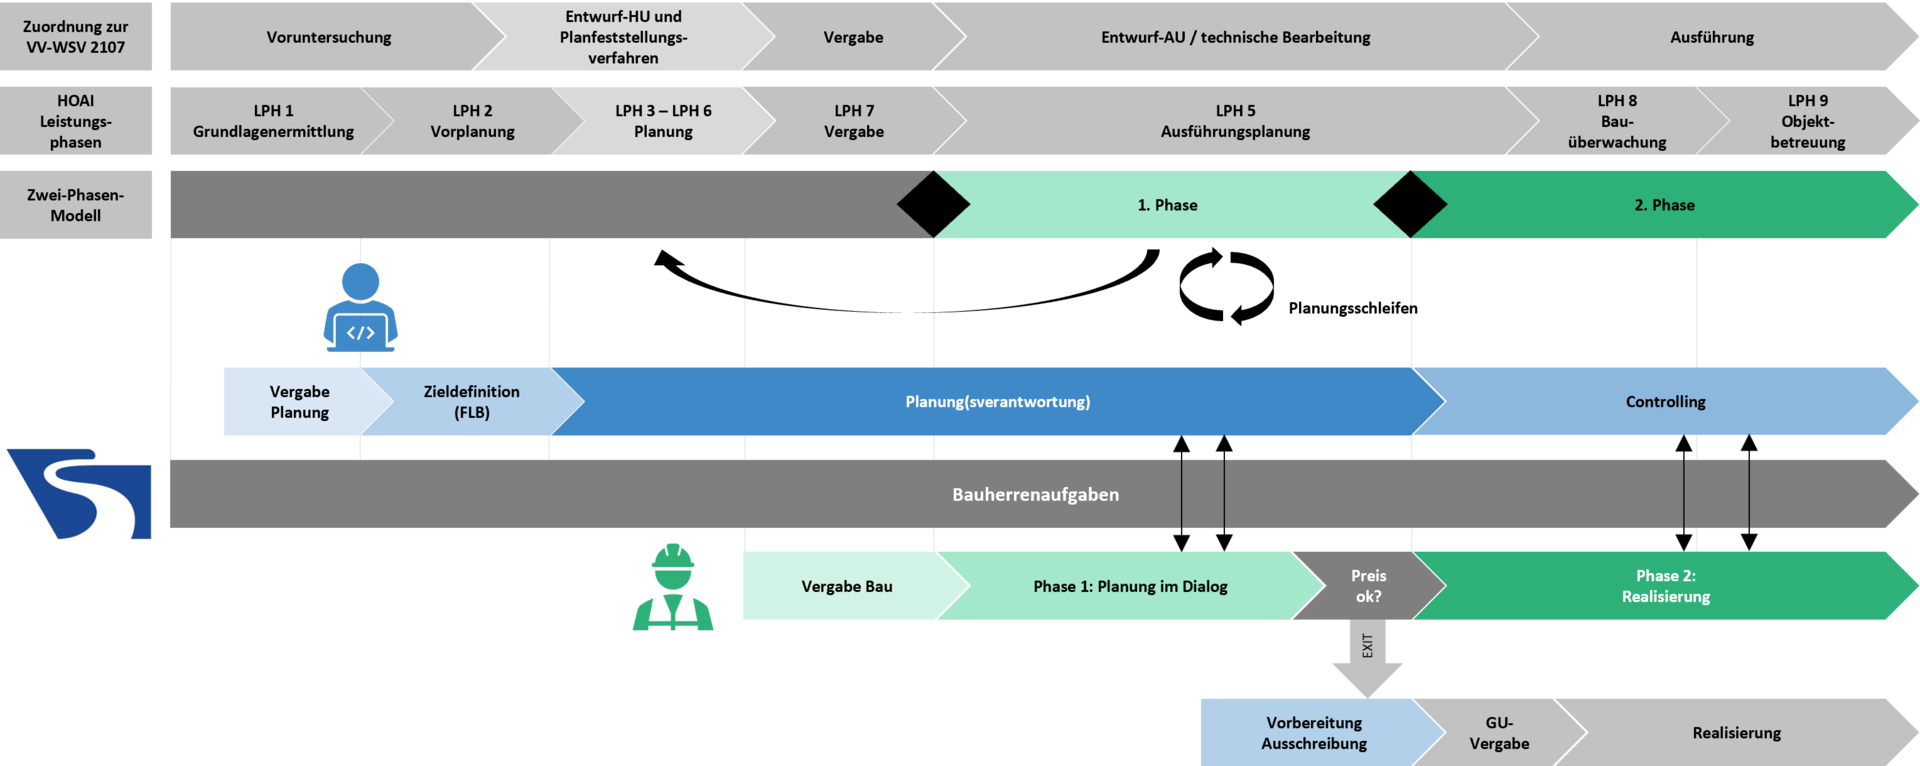 Ablauf und Verantwortlichkeiten beim Zwei-Phasen-Modell